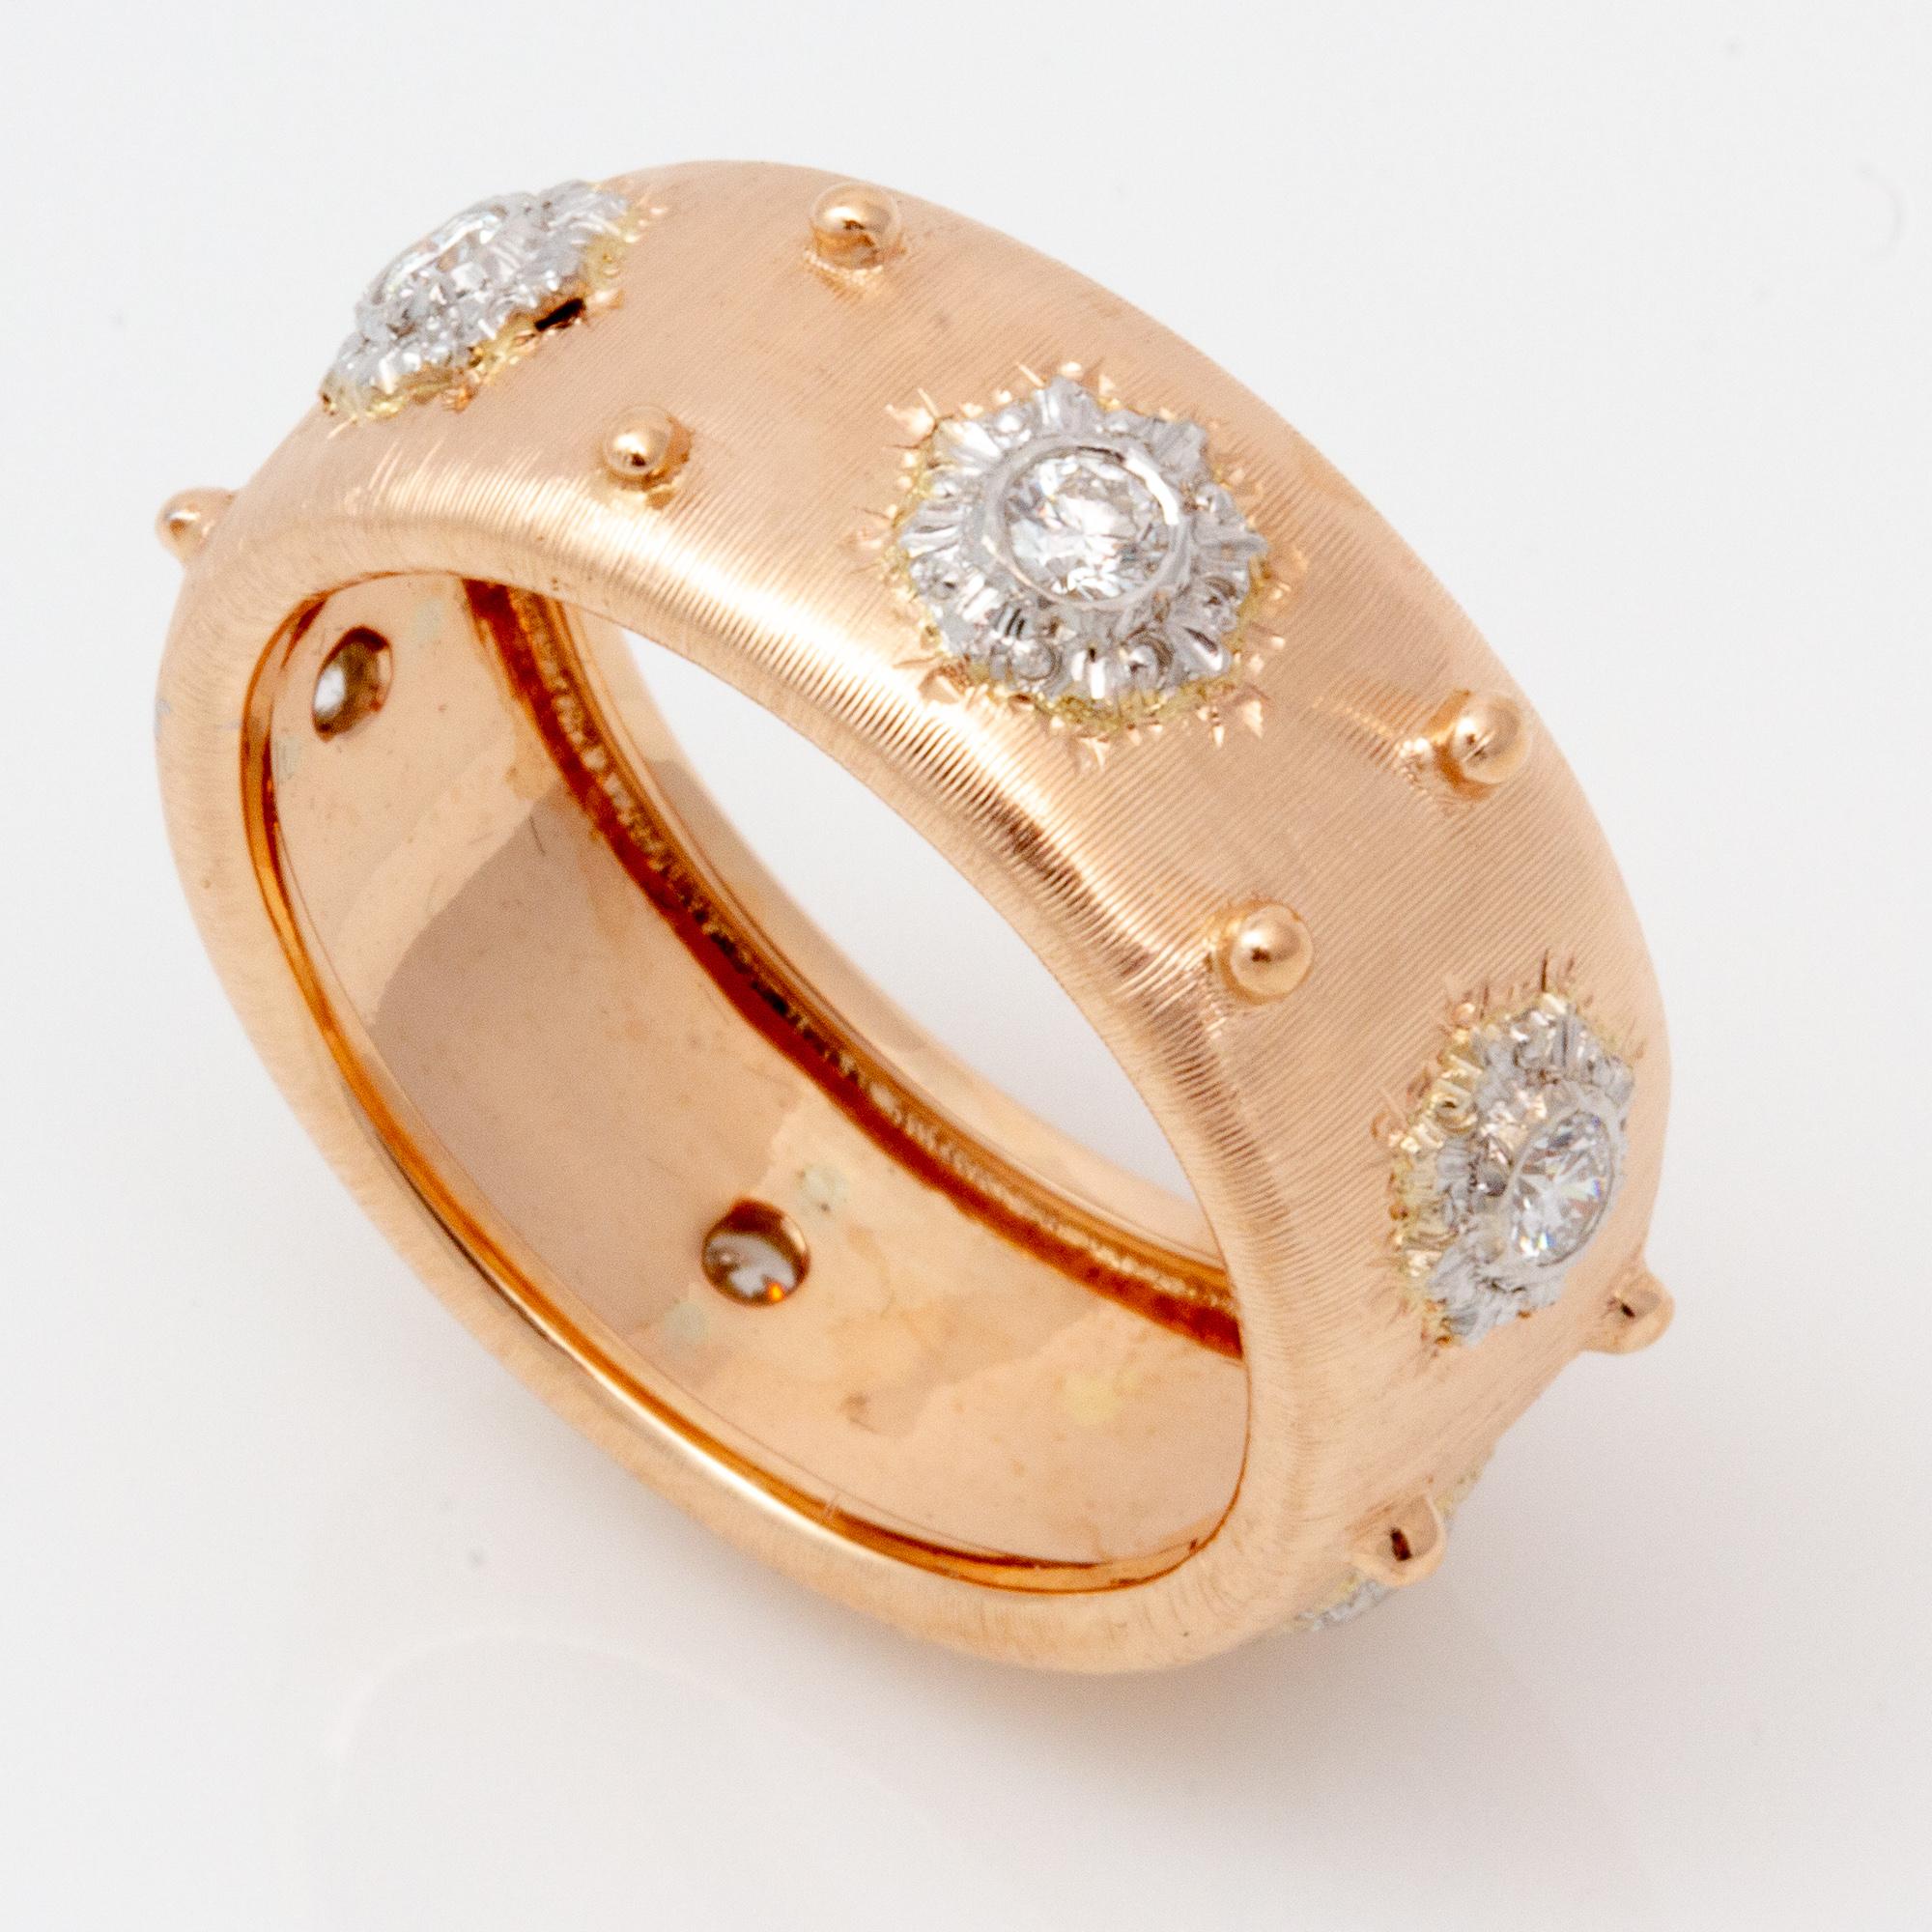 Fabriqué à la main en Italie dans un style florentin de l'ancien monde, cet anneau d'éternité exquis est serti en or rose 18 carats et constitue une très belle bague de tous les jours.  Fabriqué à la main par un petit studio familial à Florence, en